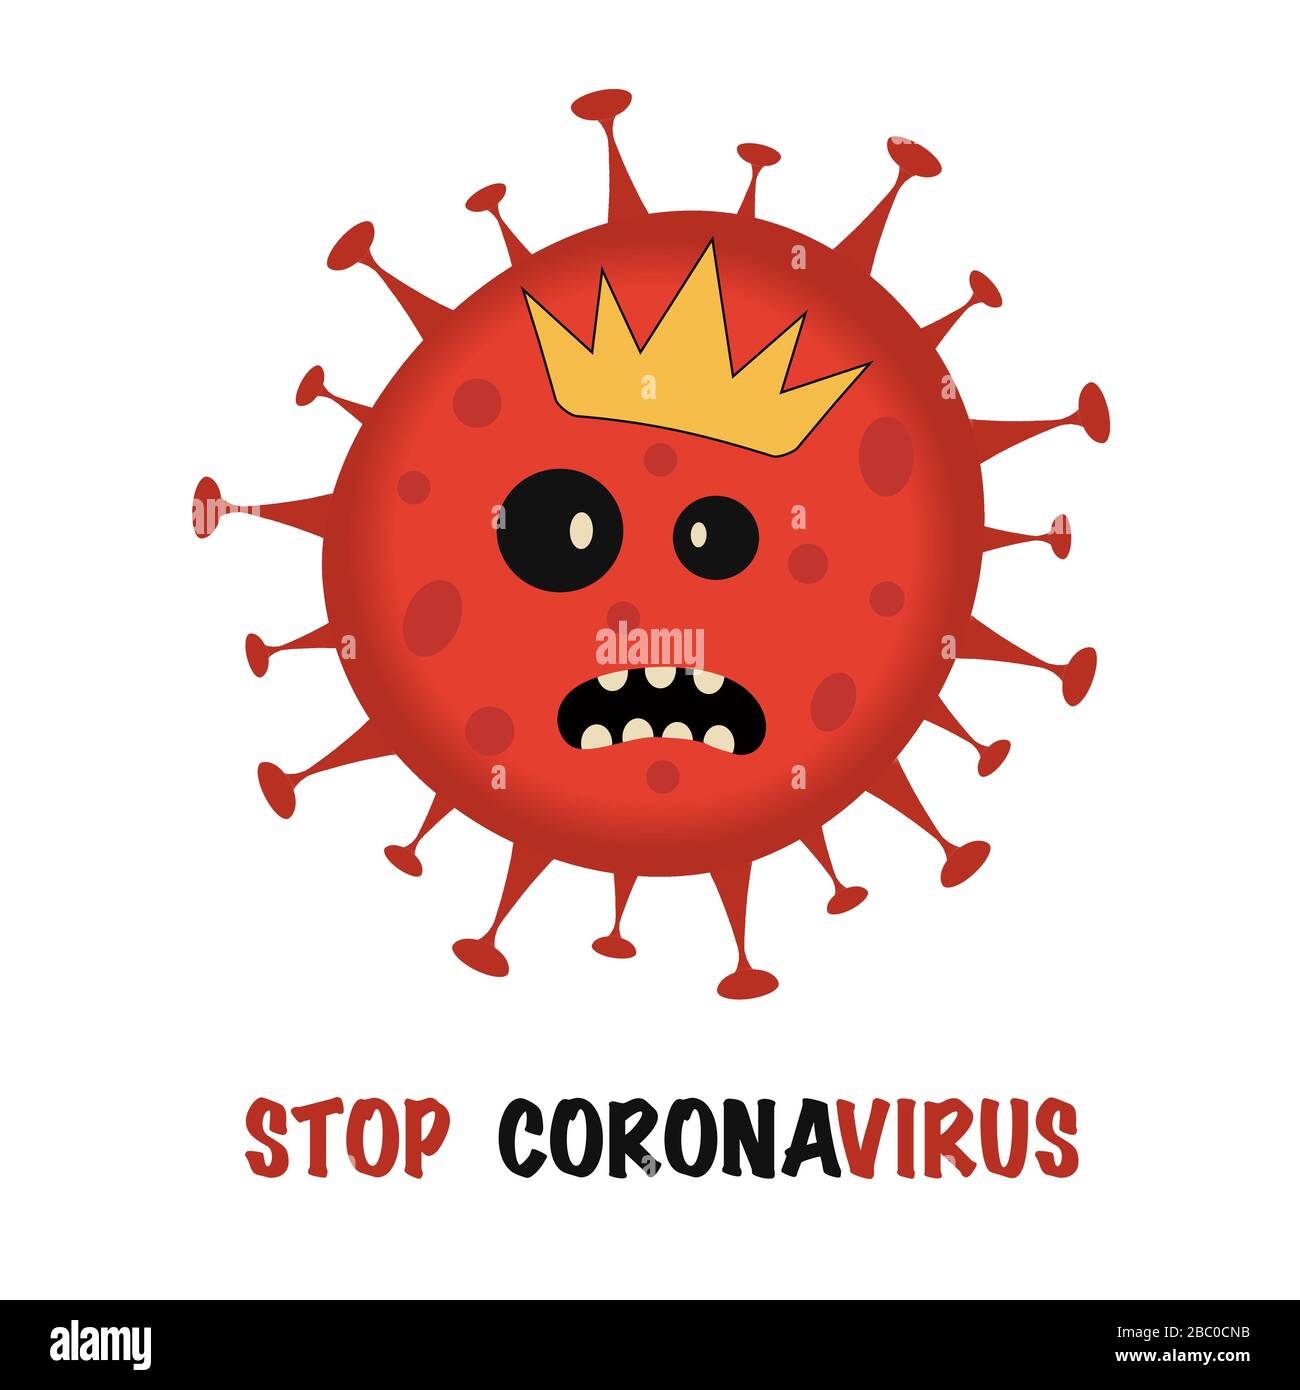 Coronavirus Bakterium Cell Icon, 2019-nCoV Roman Coronavirus Bakterien. Keine Infektion und keine Coronavirus Konzepte. Gefährliche Coronavirus-Zelle in China Stock Vektor